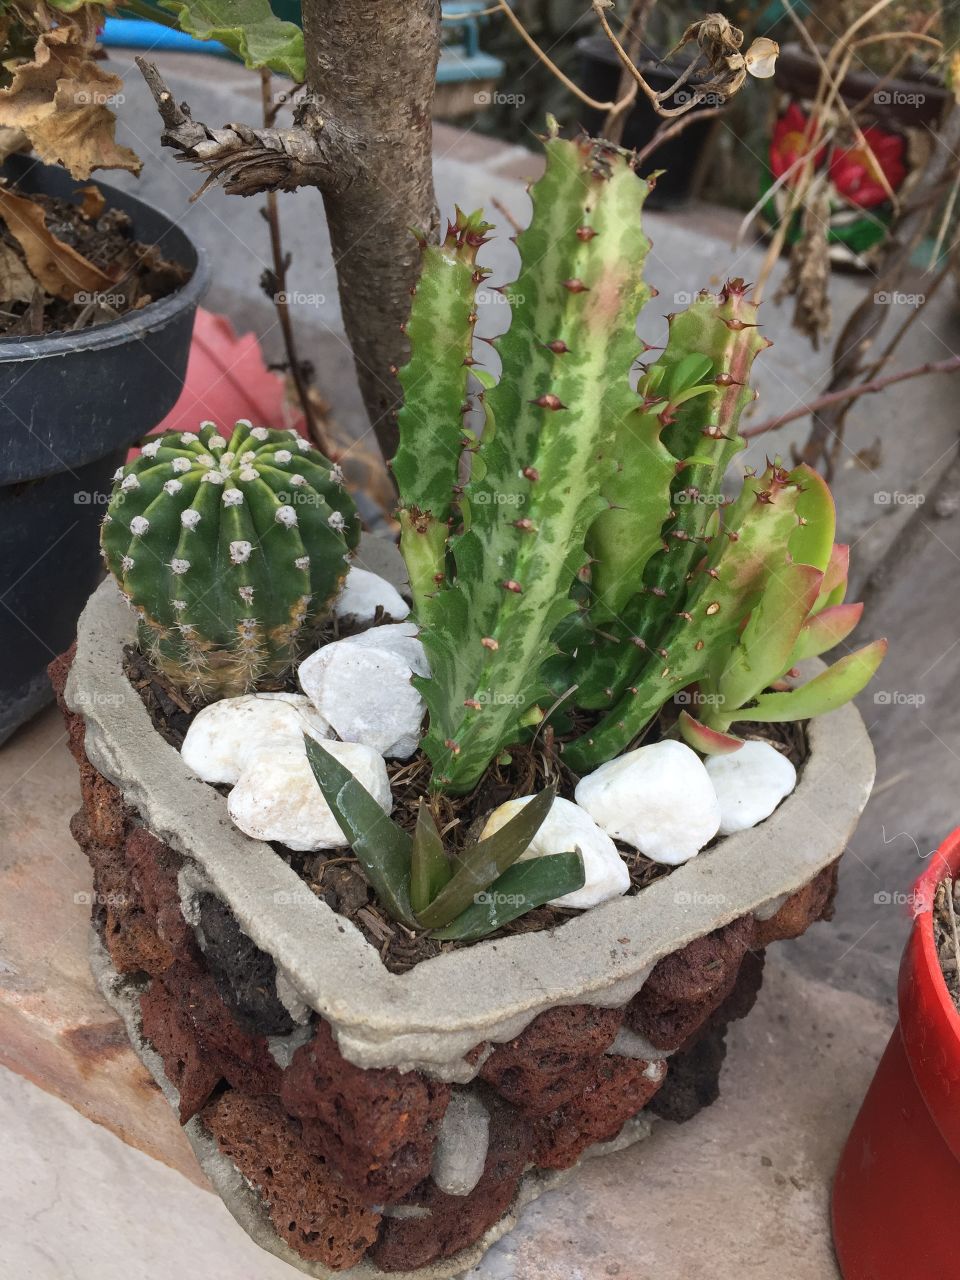 A little cactus 